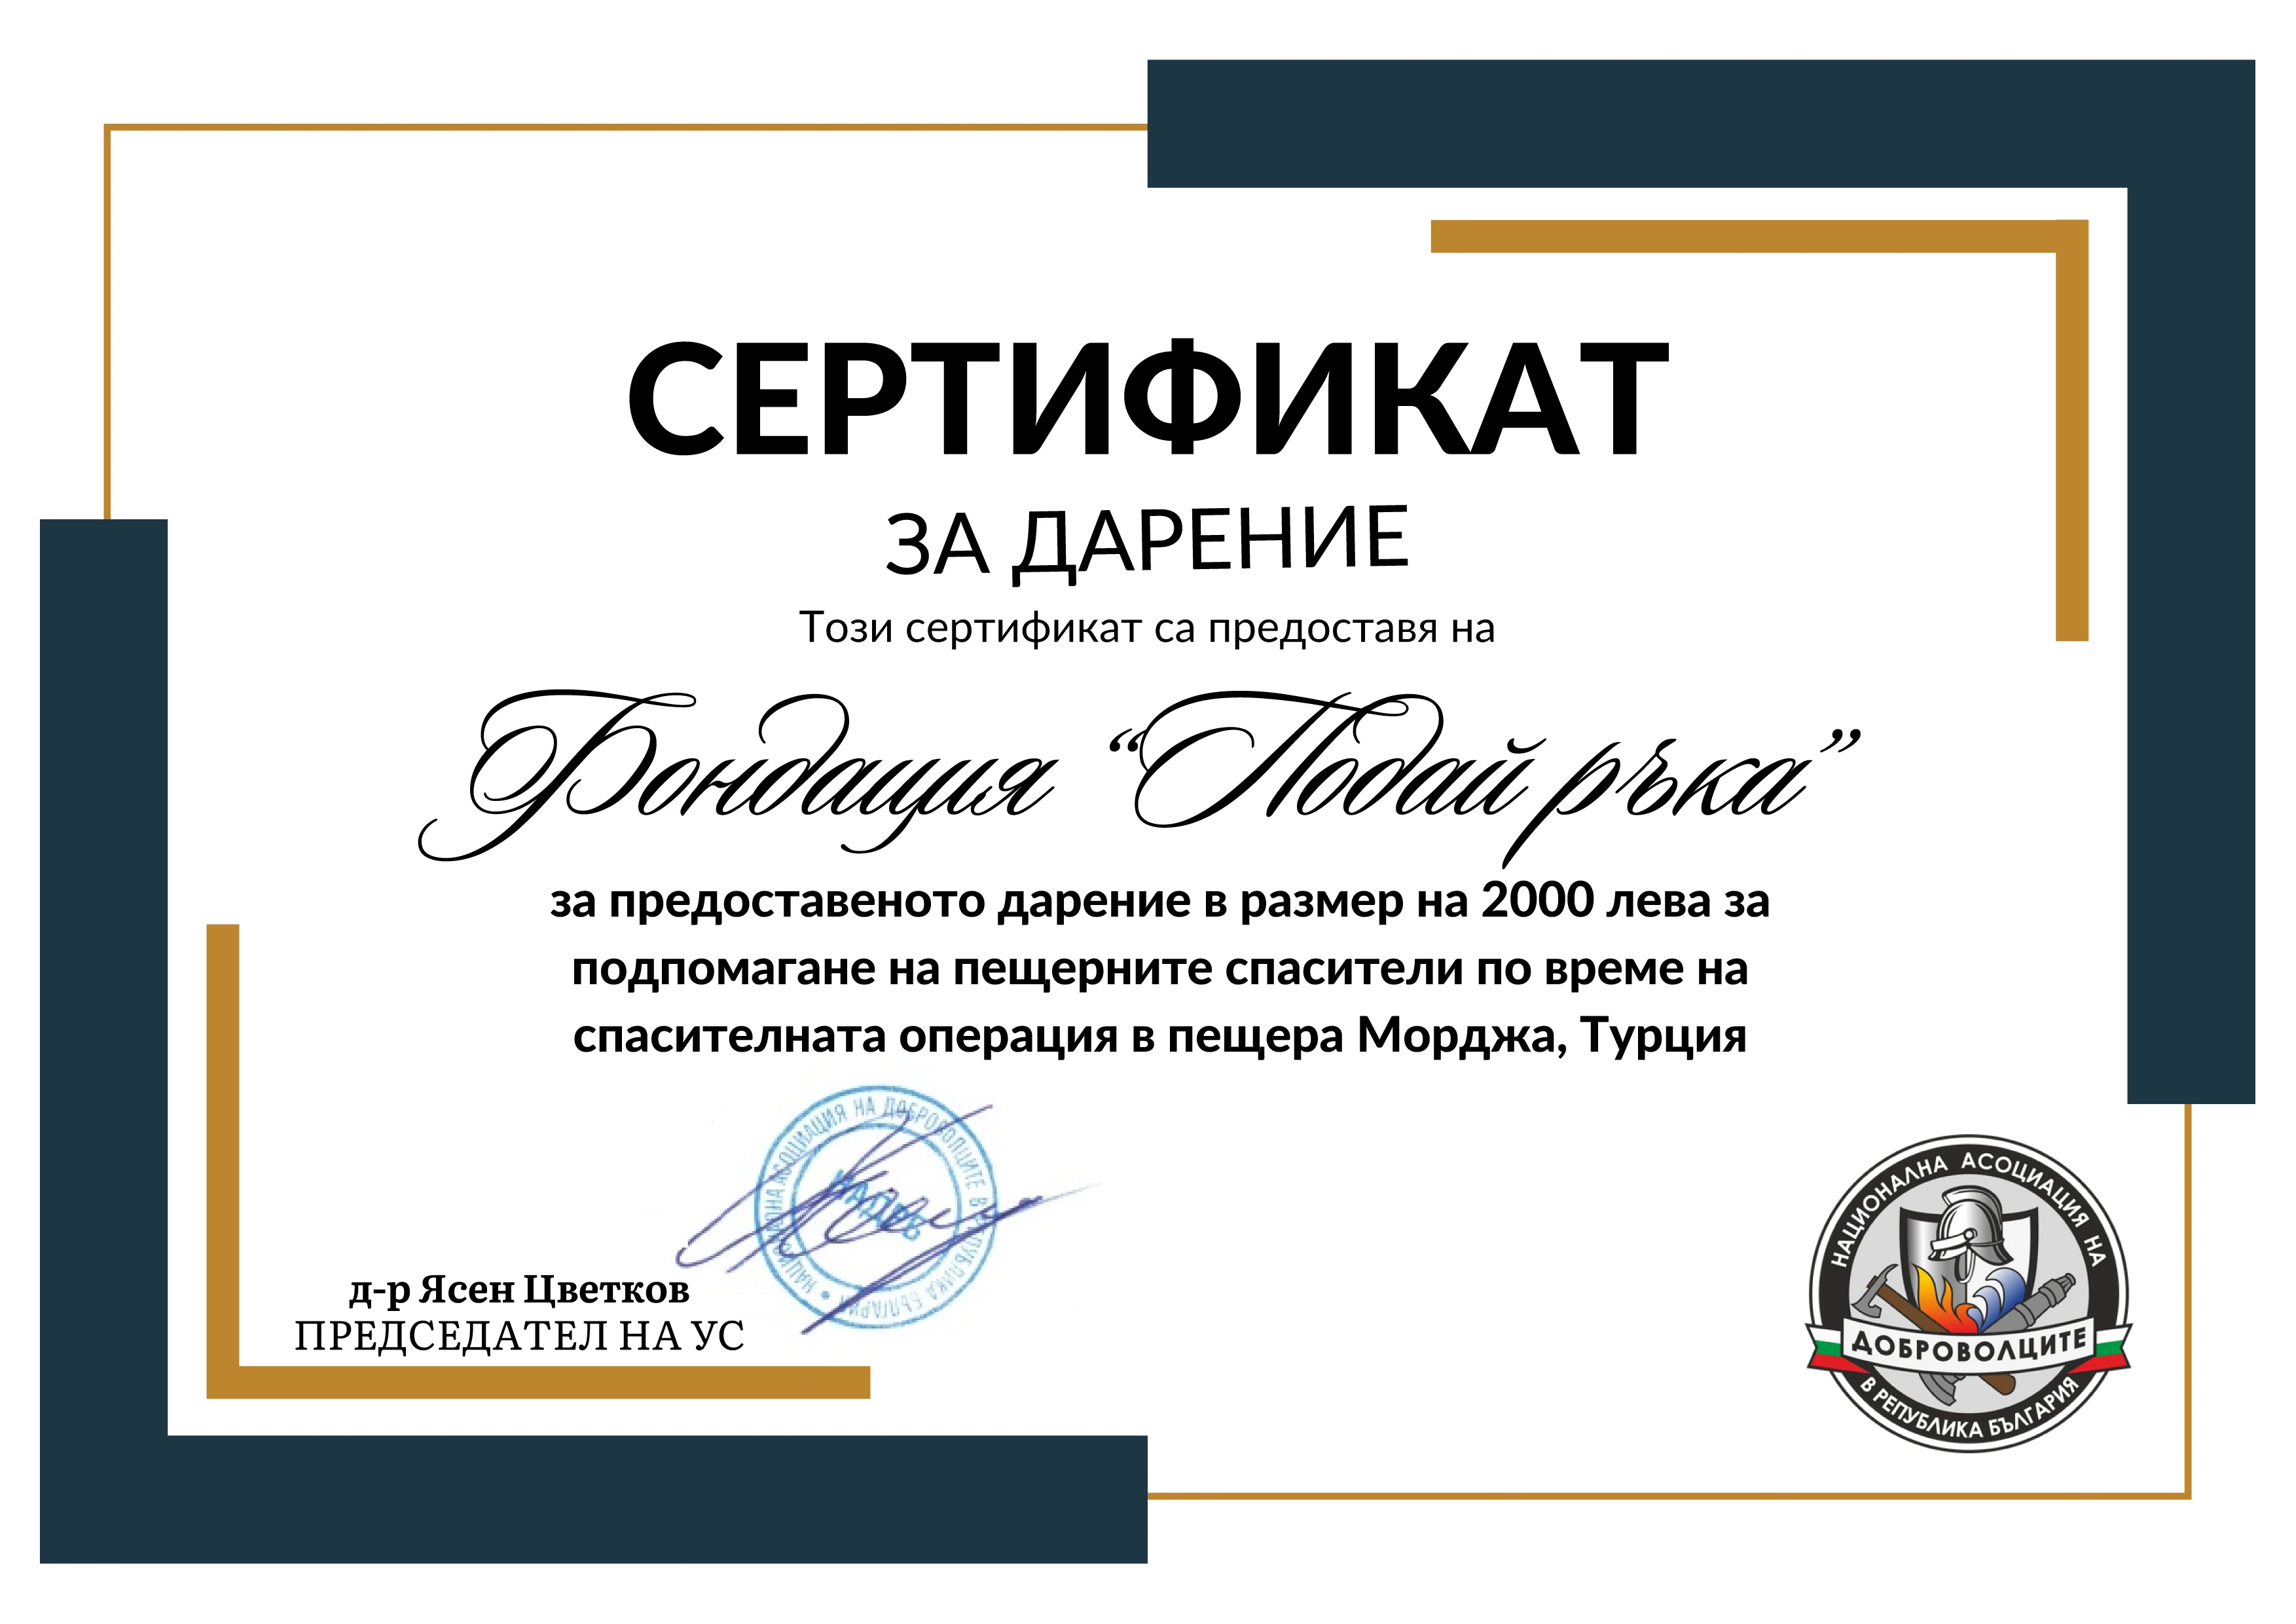 400-сертификат-за-дарение-16966687523944.jpg